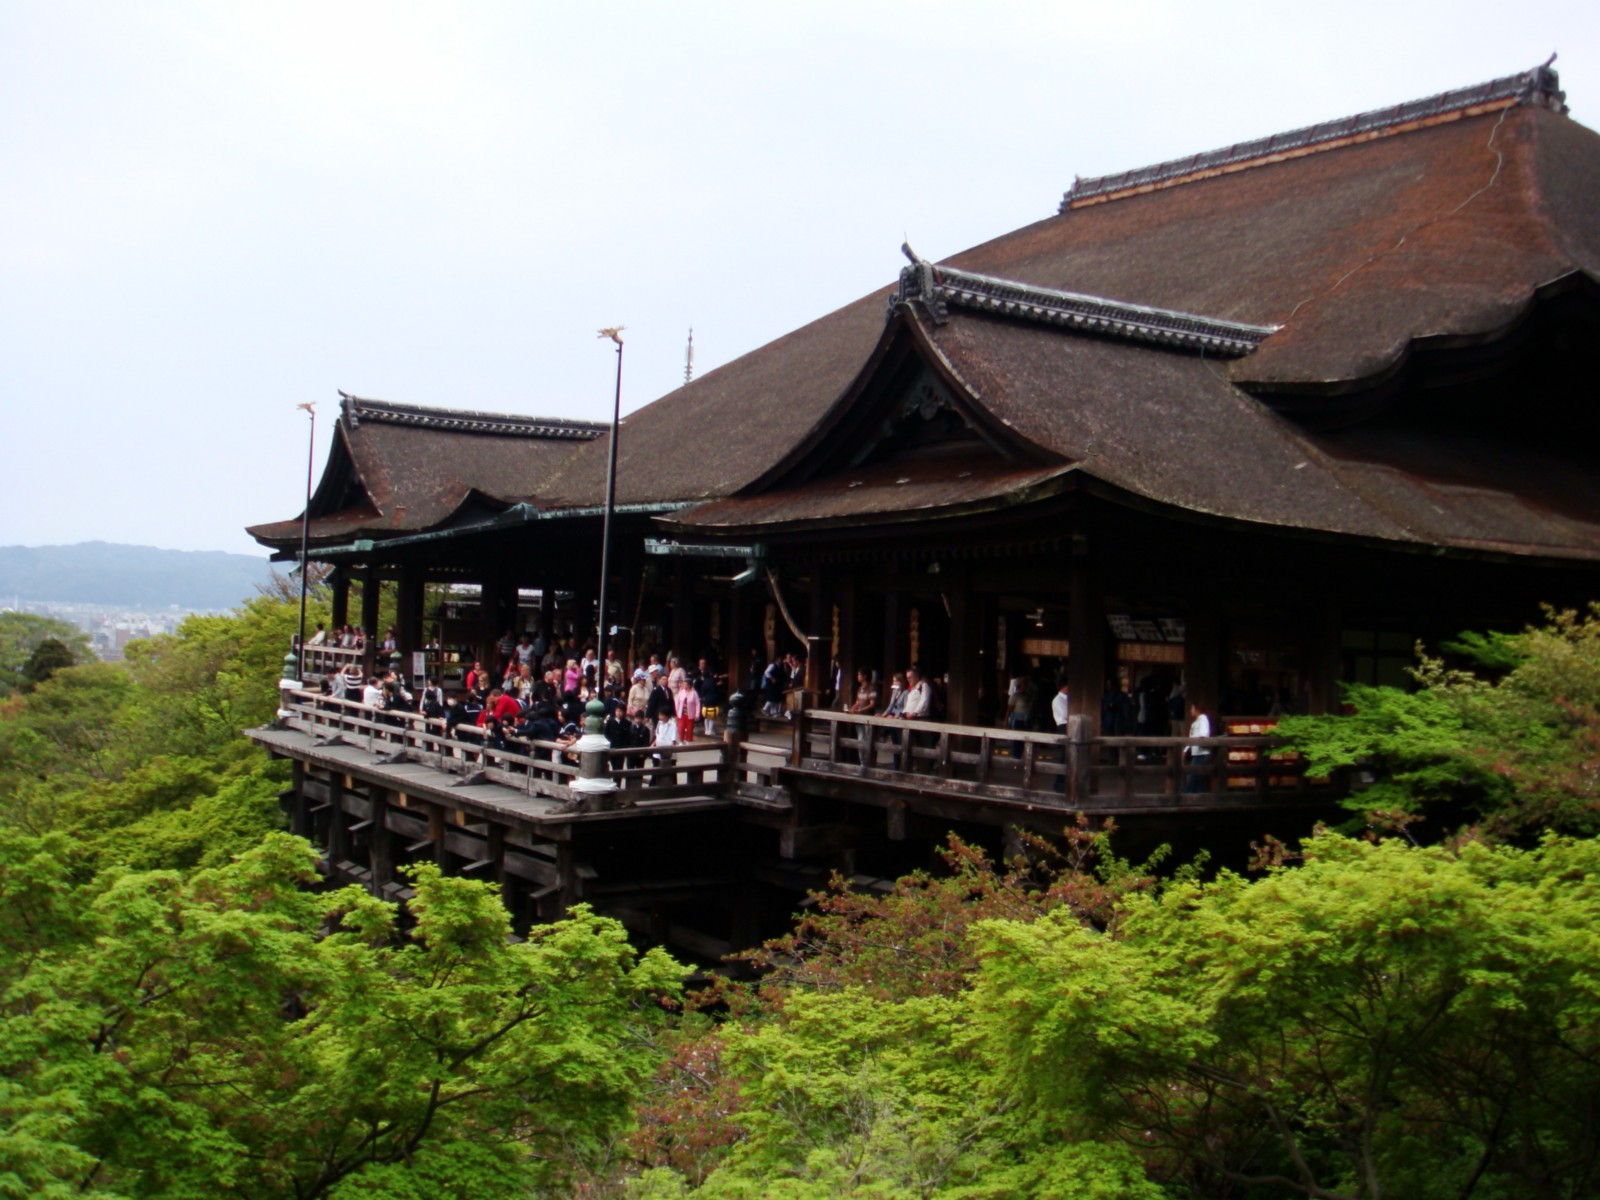 The large wooden terrace of Kiyomizudera Temple